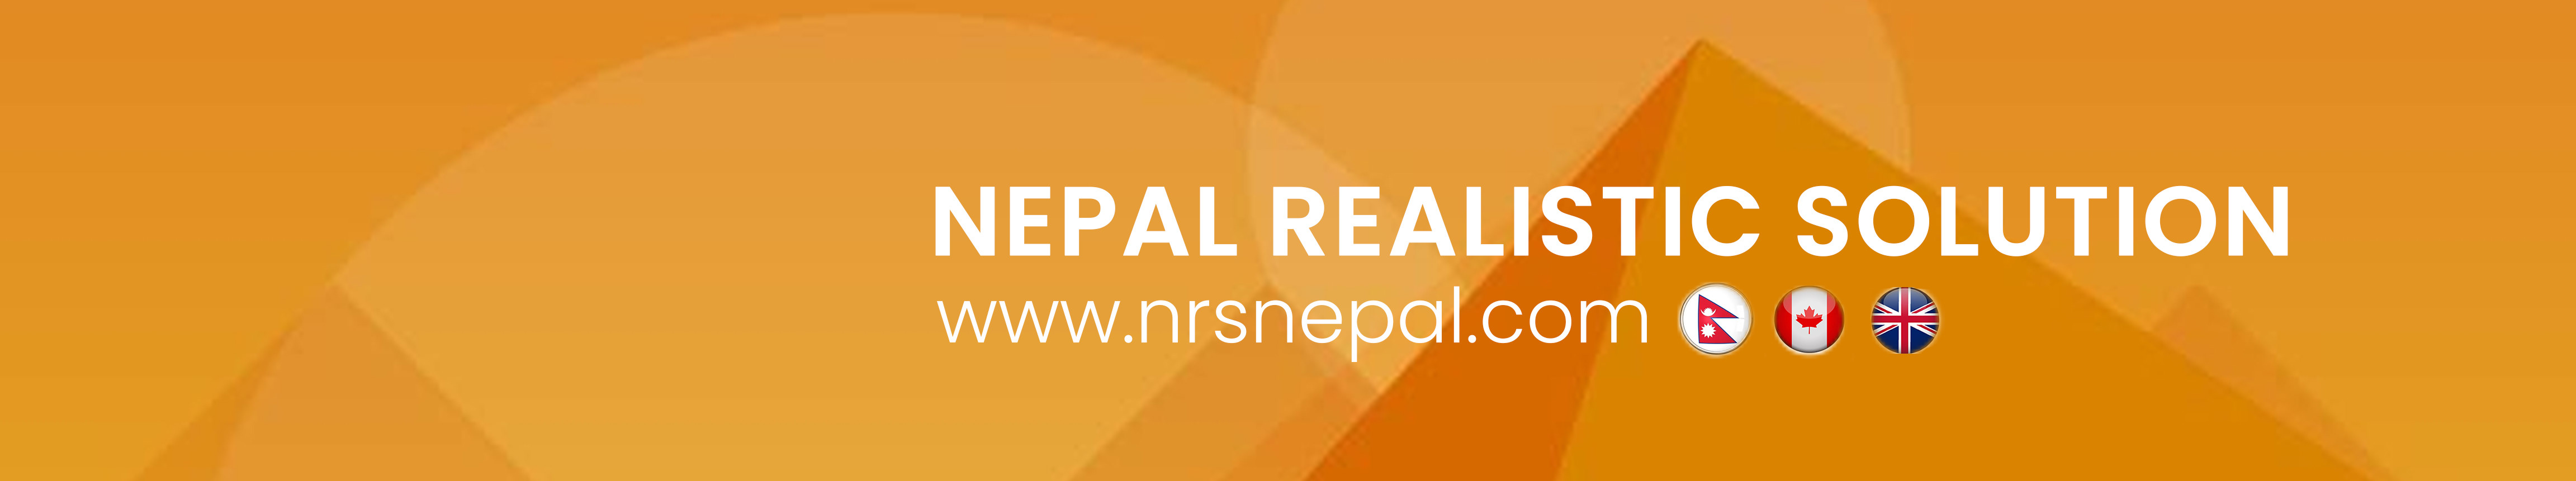 Nepal Realistic Solution 님의 프로필 배너